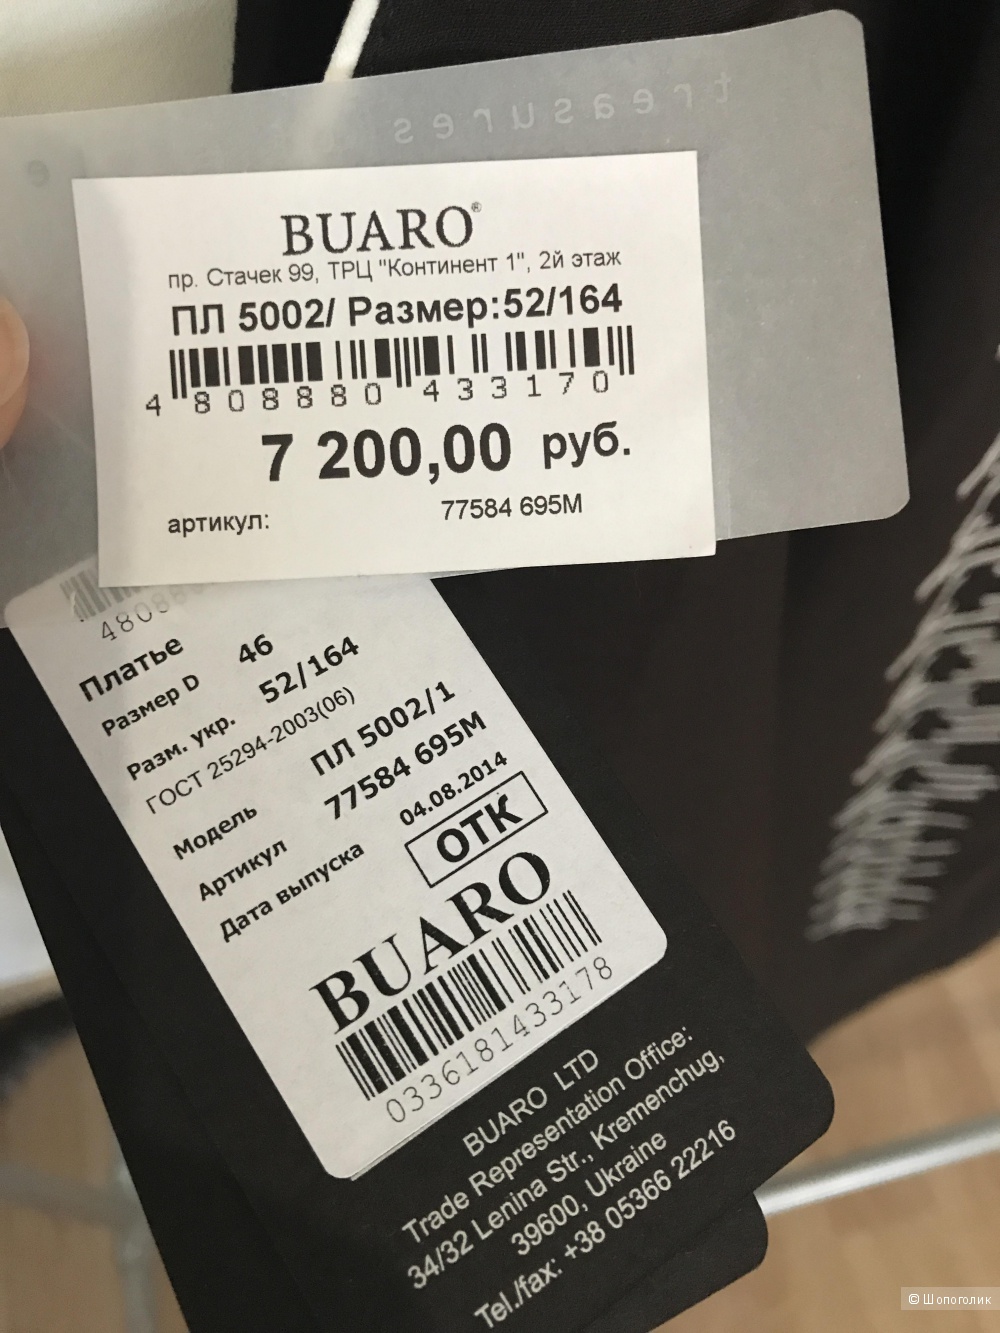 Деловое платье "BUARO" шоколадного цвета с вышивкой, размер 52.